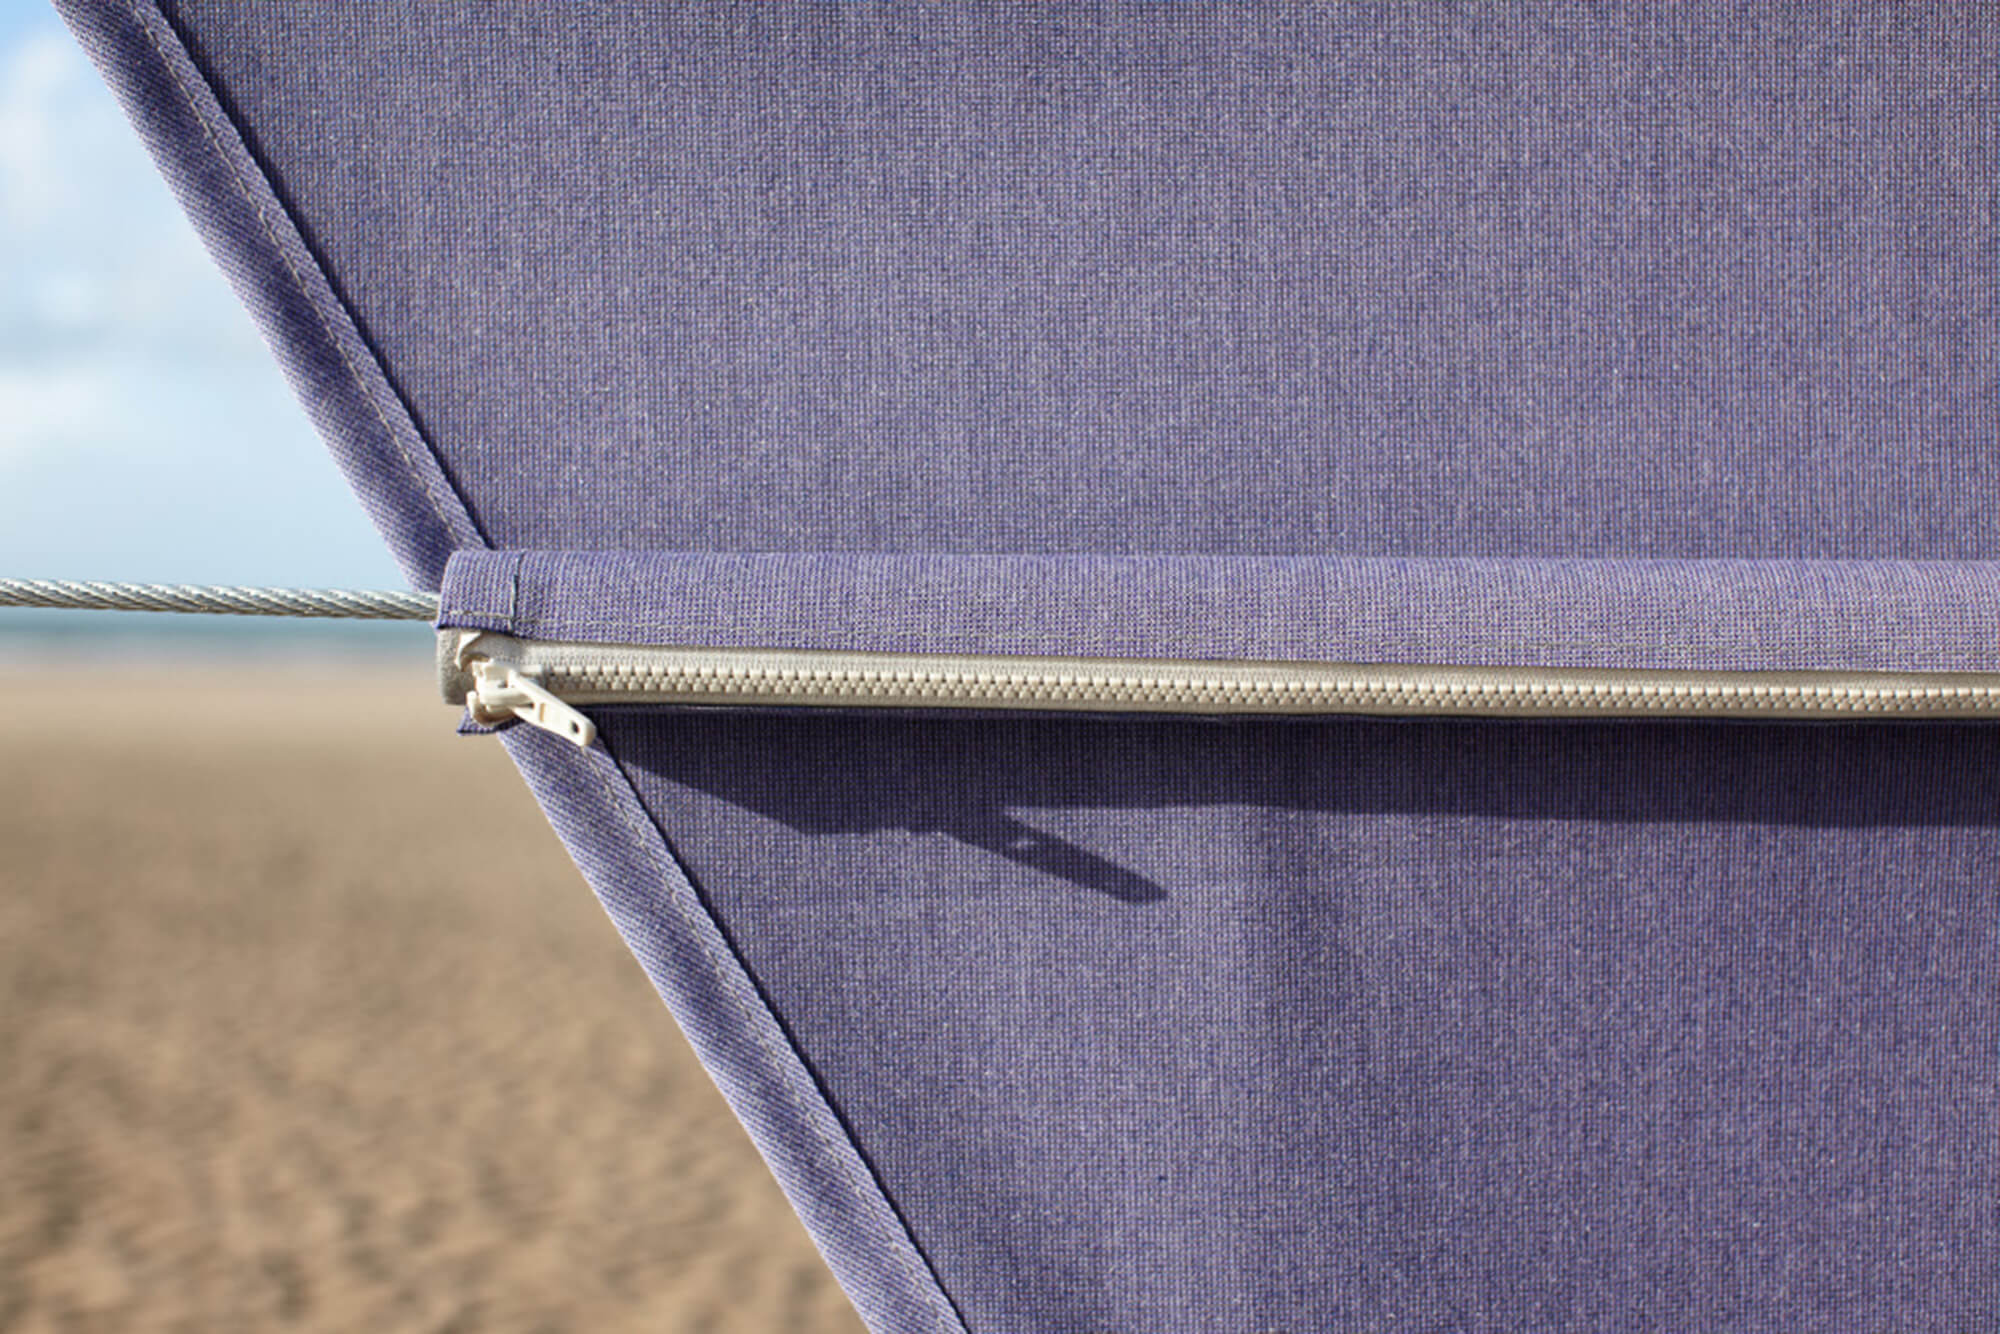 Detalhe em close da capota bimini feita com tecido Sunbrella